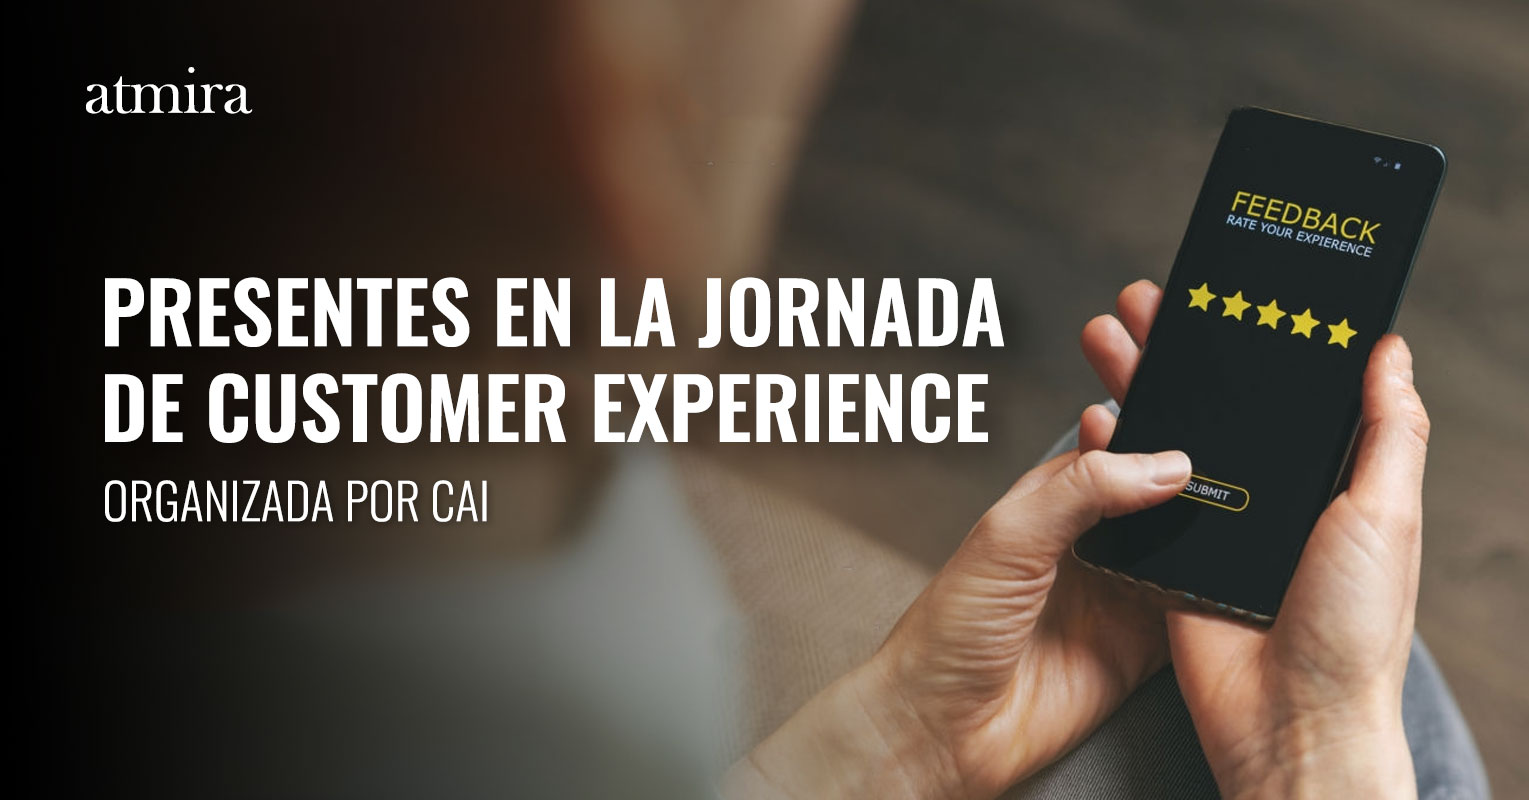 Presentes-en-la-jornada-Customer-Experience-CAI